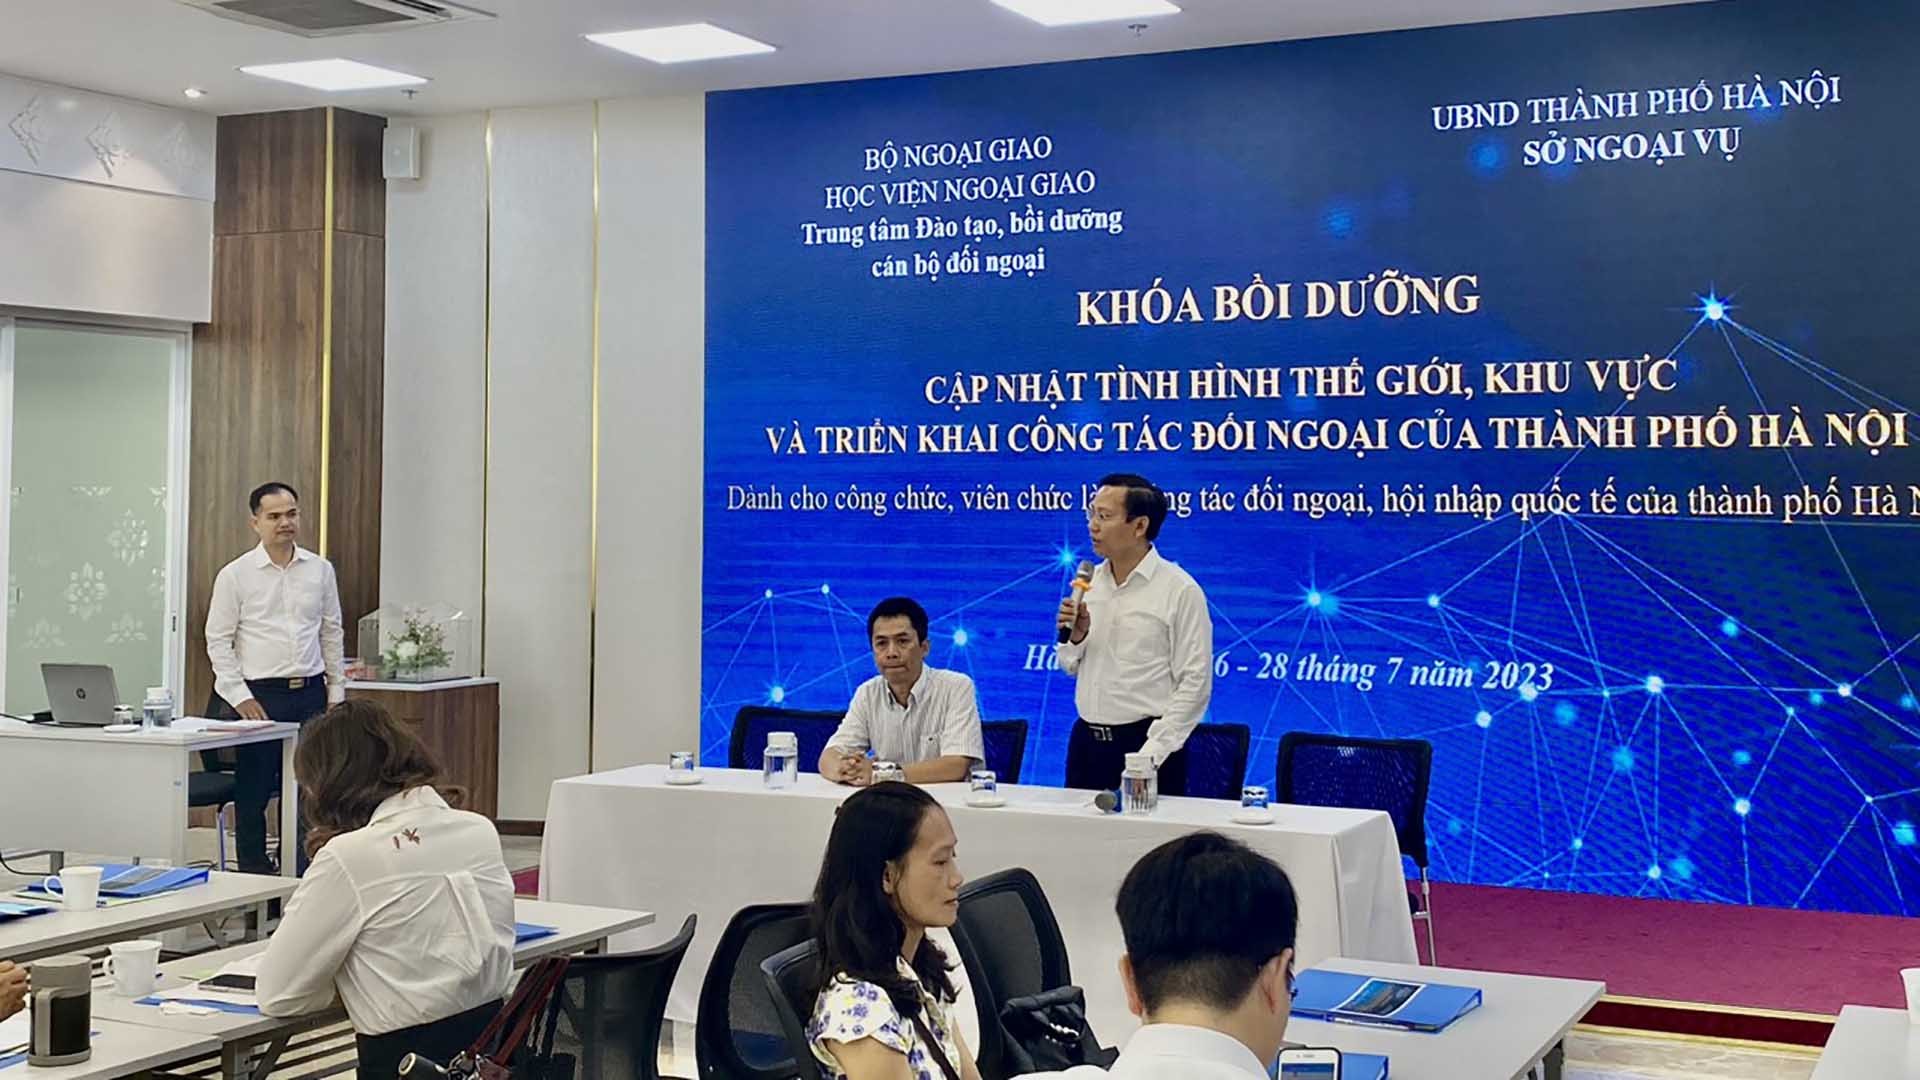 Ông Trần Nghĩa Hòa, Phó Giám đốc Sở Ngoại vụ Hà Nội phát biểu khai giảng.